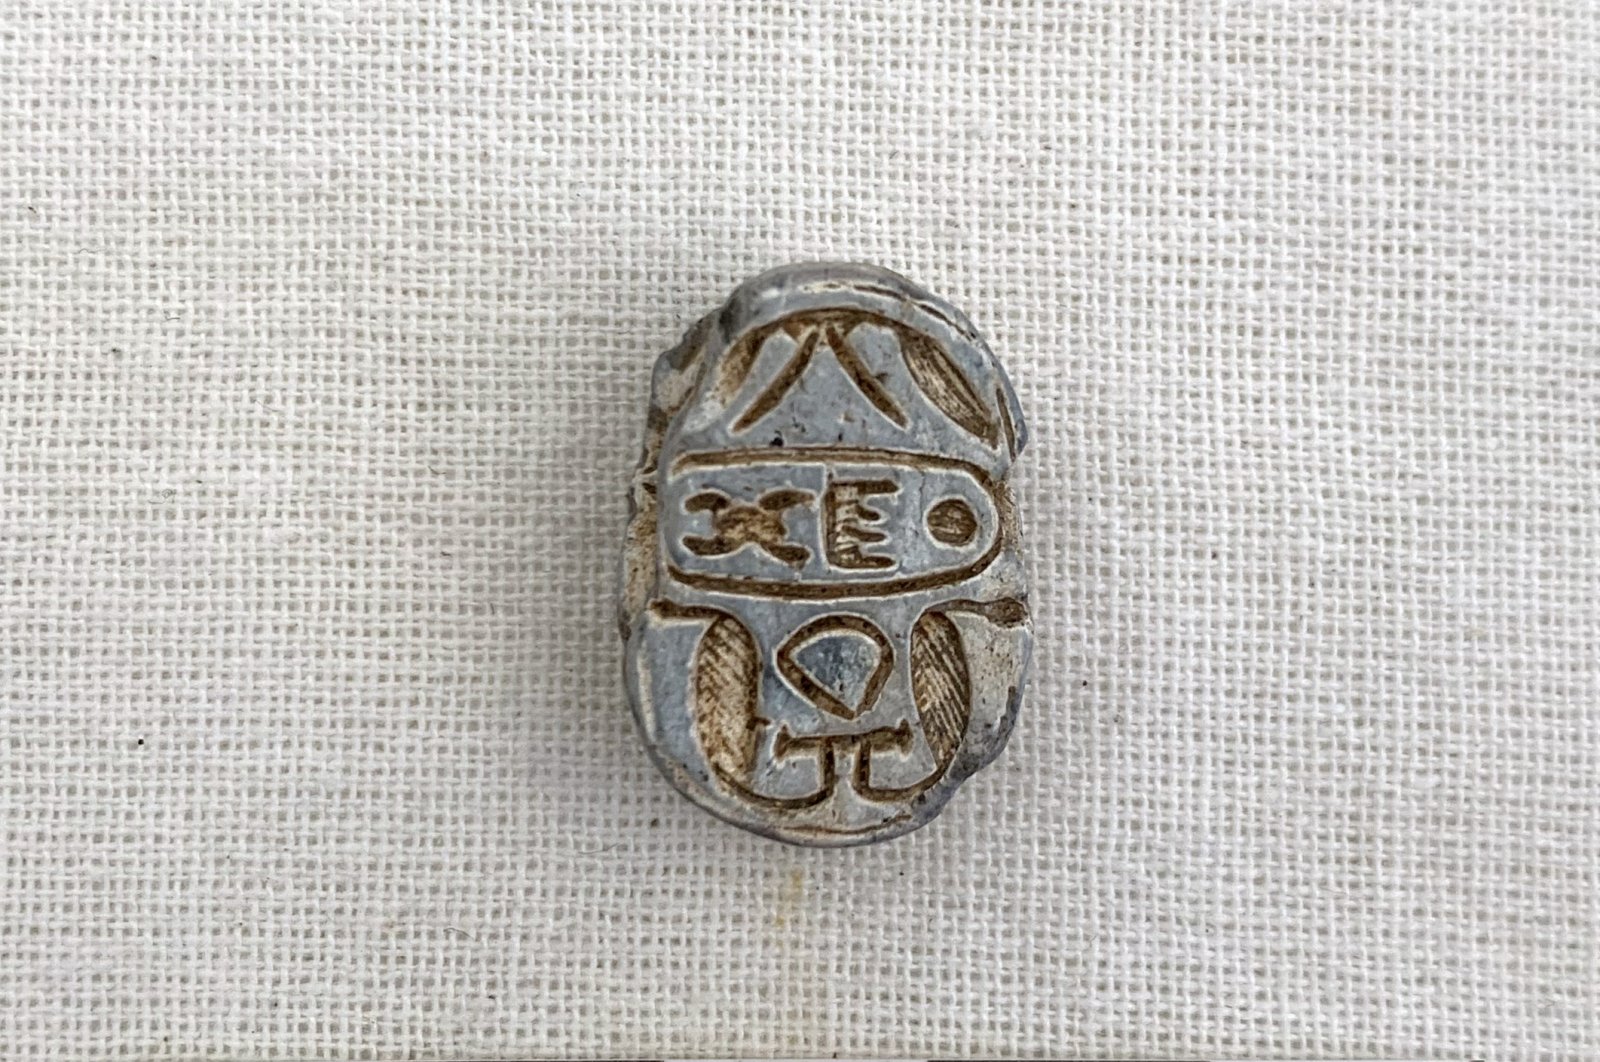 Ученые нашли уникальную египетскую печать с загадочными символами (фото)